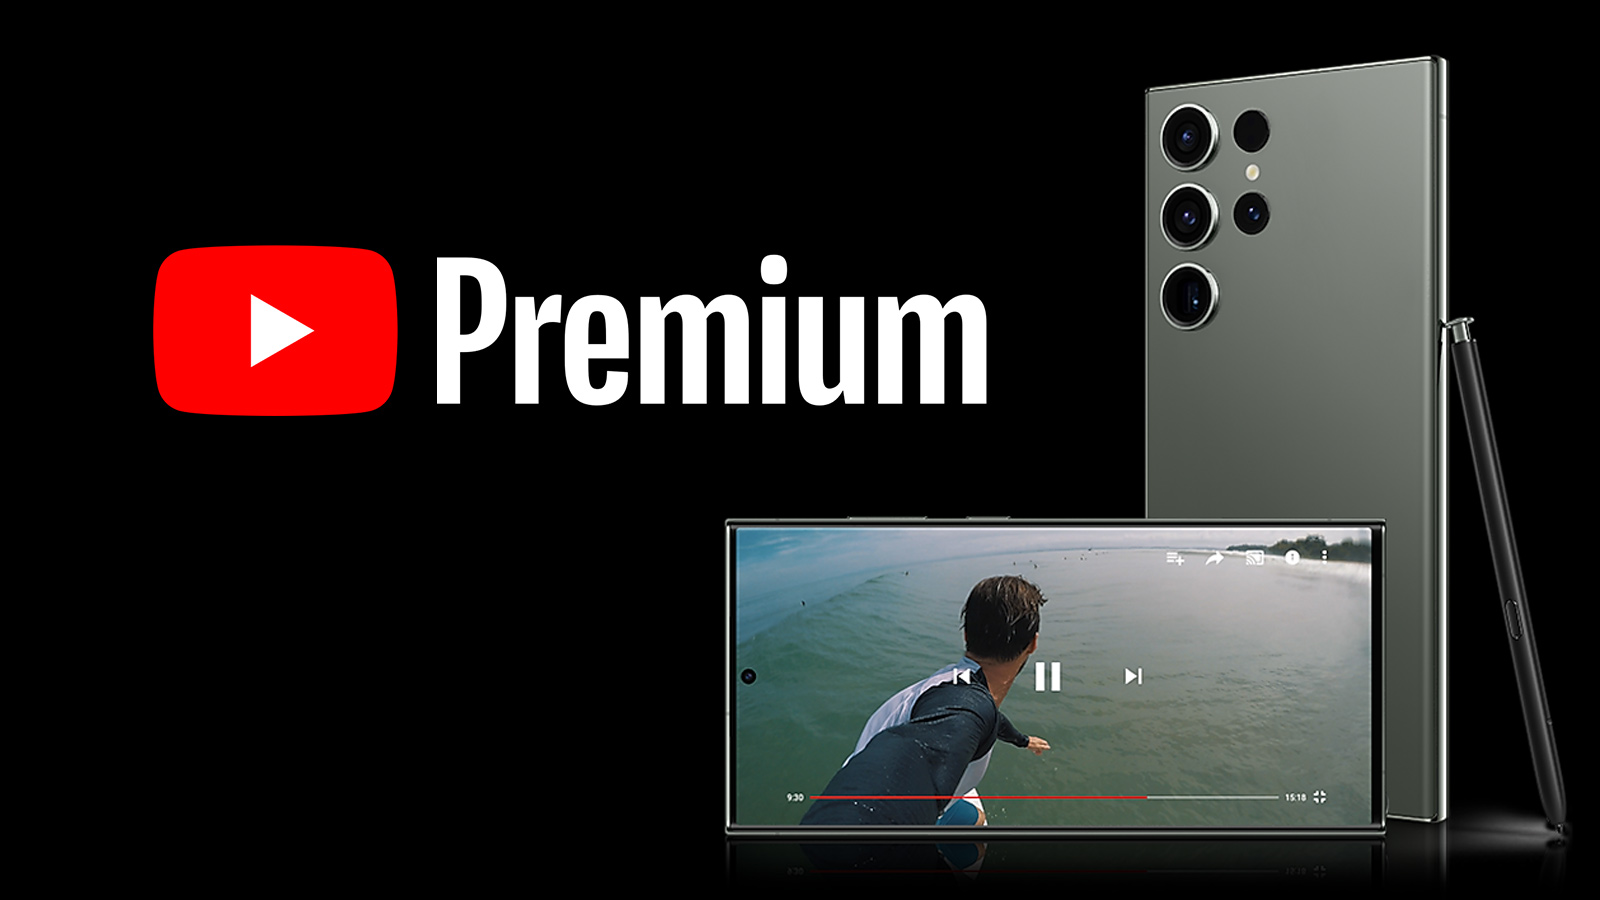 Nhận miễn phí gói Youtube Premium dành cho chủ sở hữu Samsung Galaxy tại Việt Nam